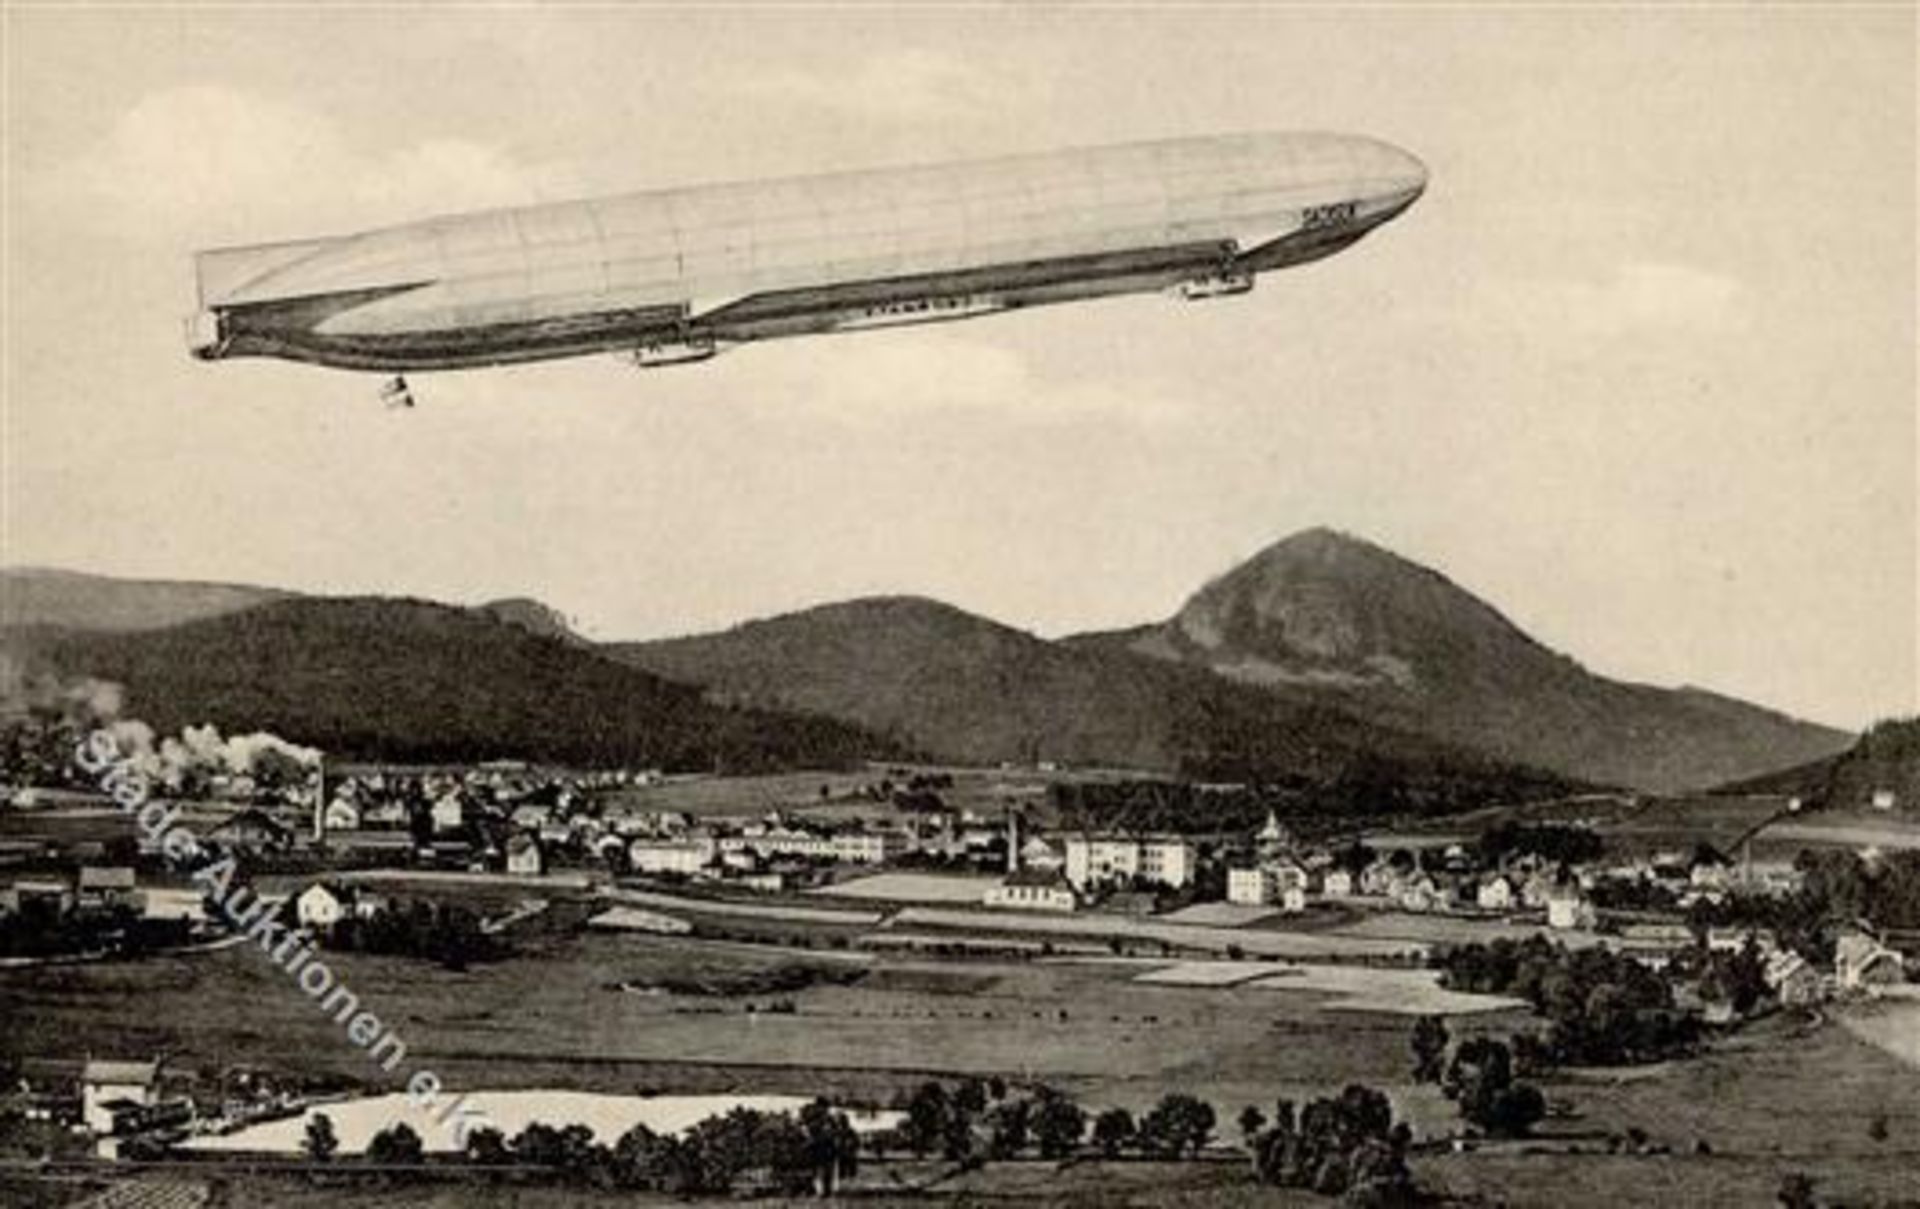 Novy Bor Tschechien Zeppelin IDieses Los wird in einer online-Auktion ohne Publikum angeboten.